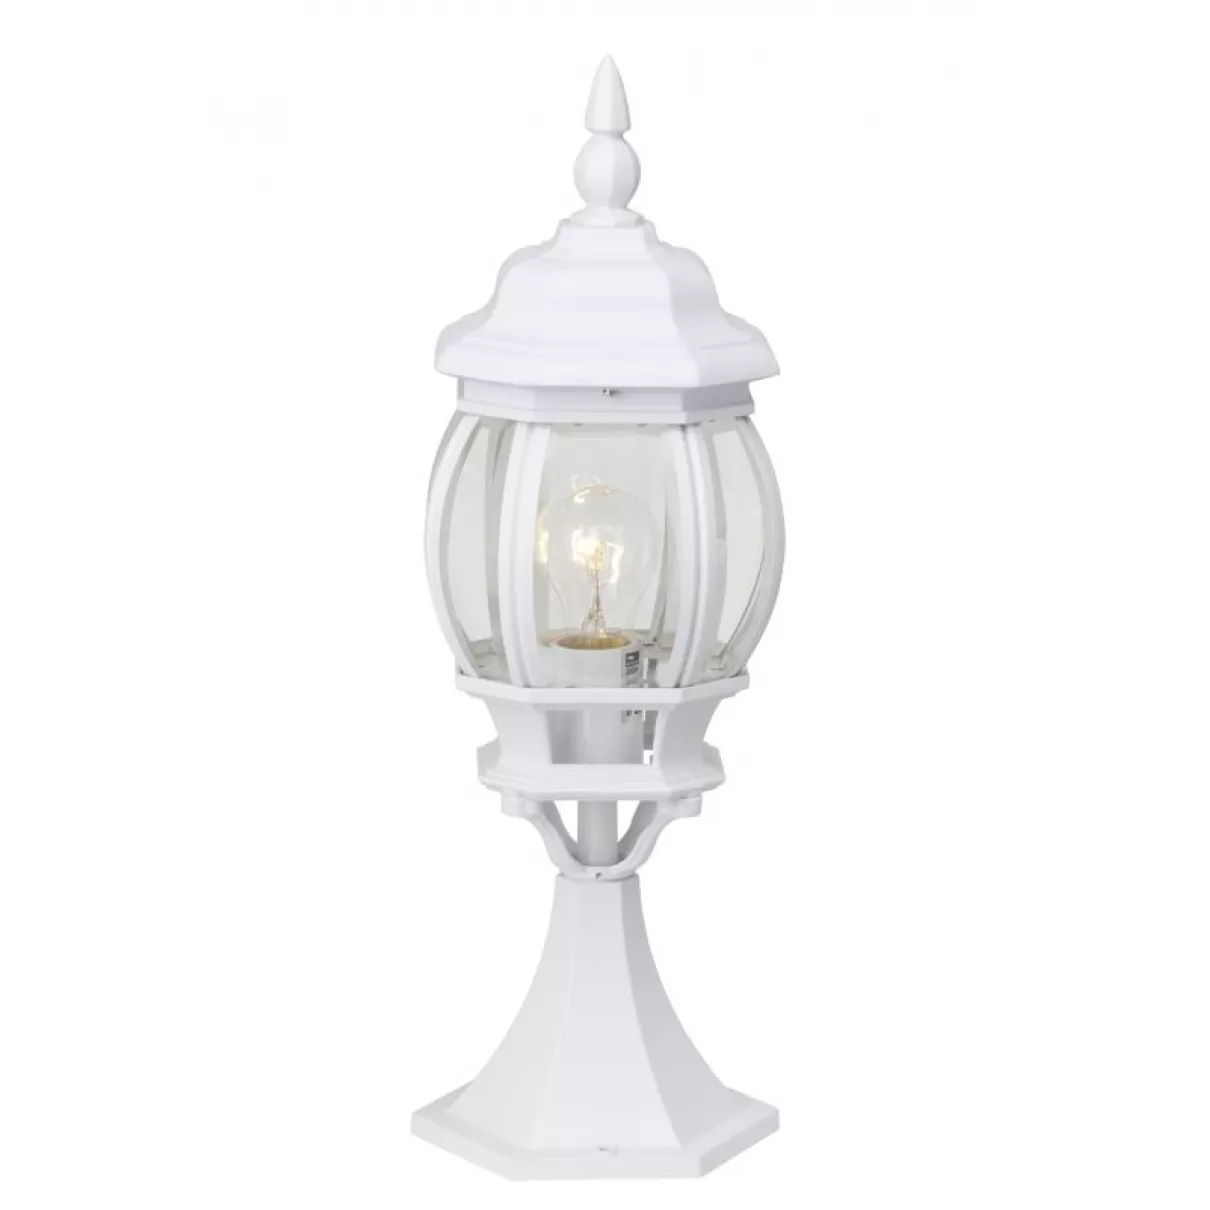 Istria - kültéri  álló lámpa, fehér, 51 cm - BRILLIANT 48684/05